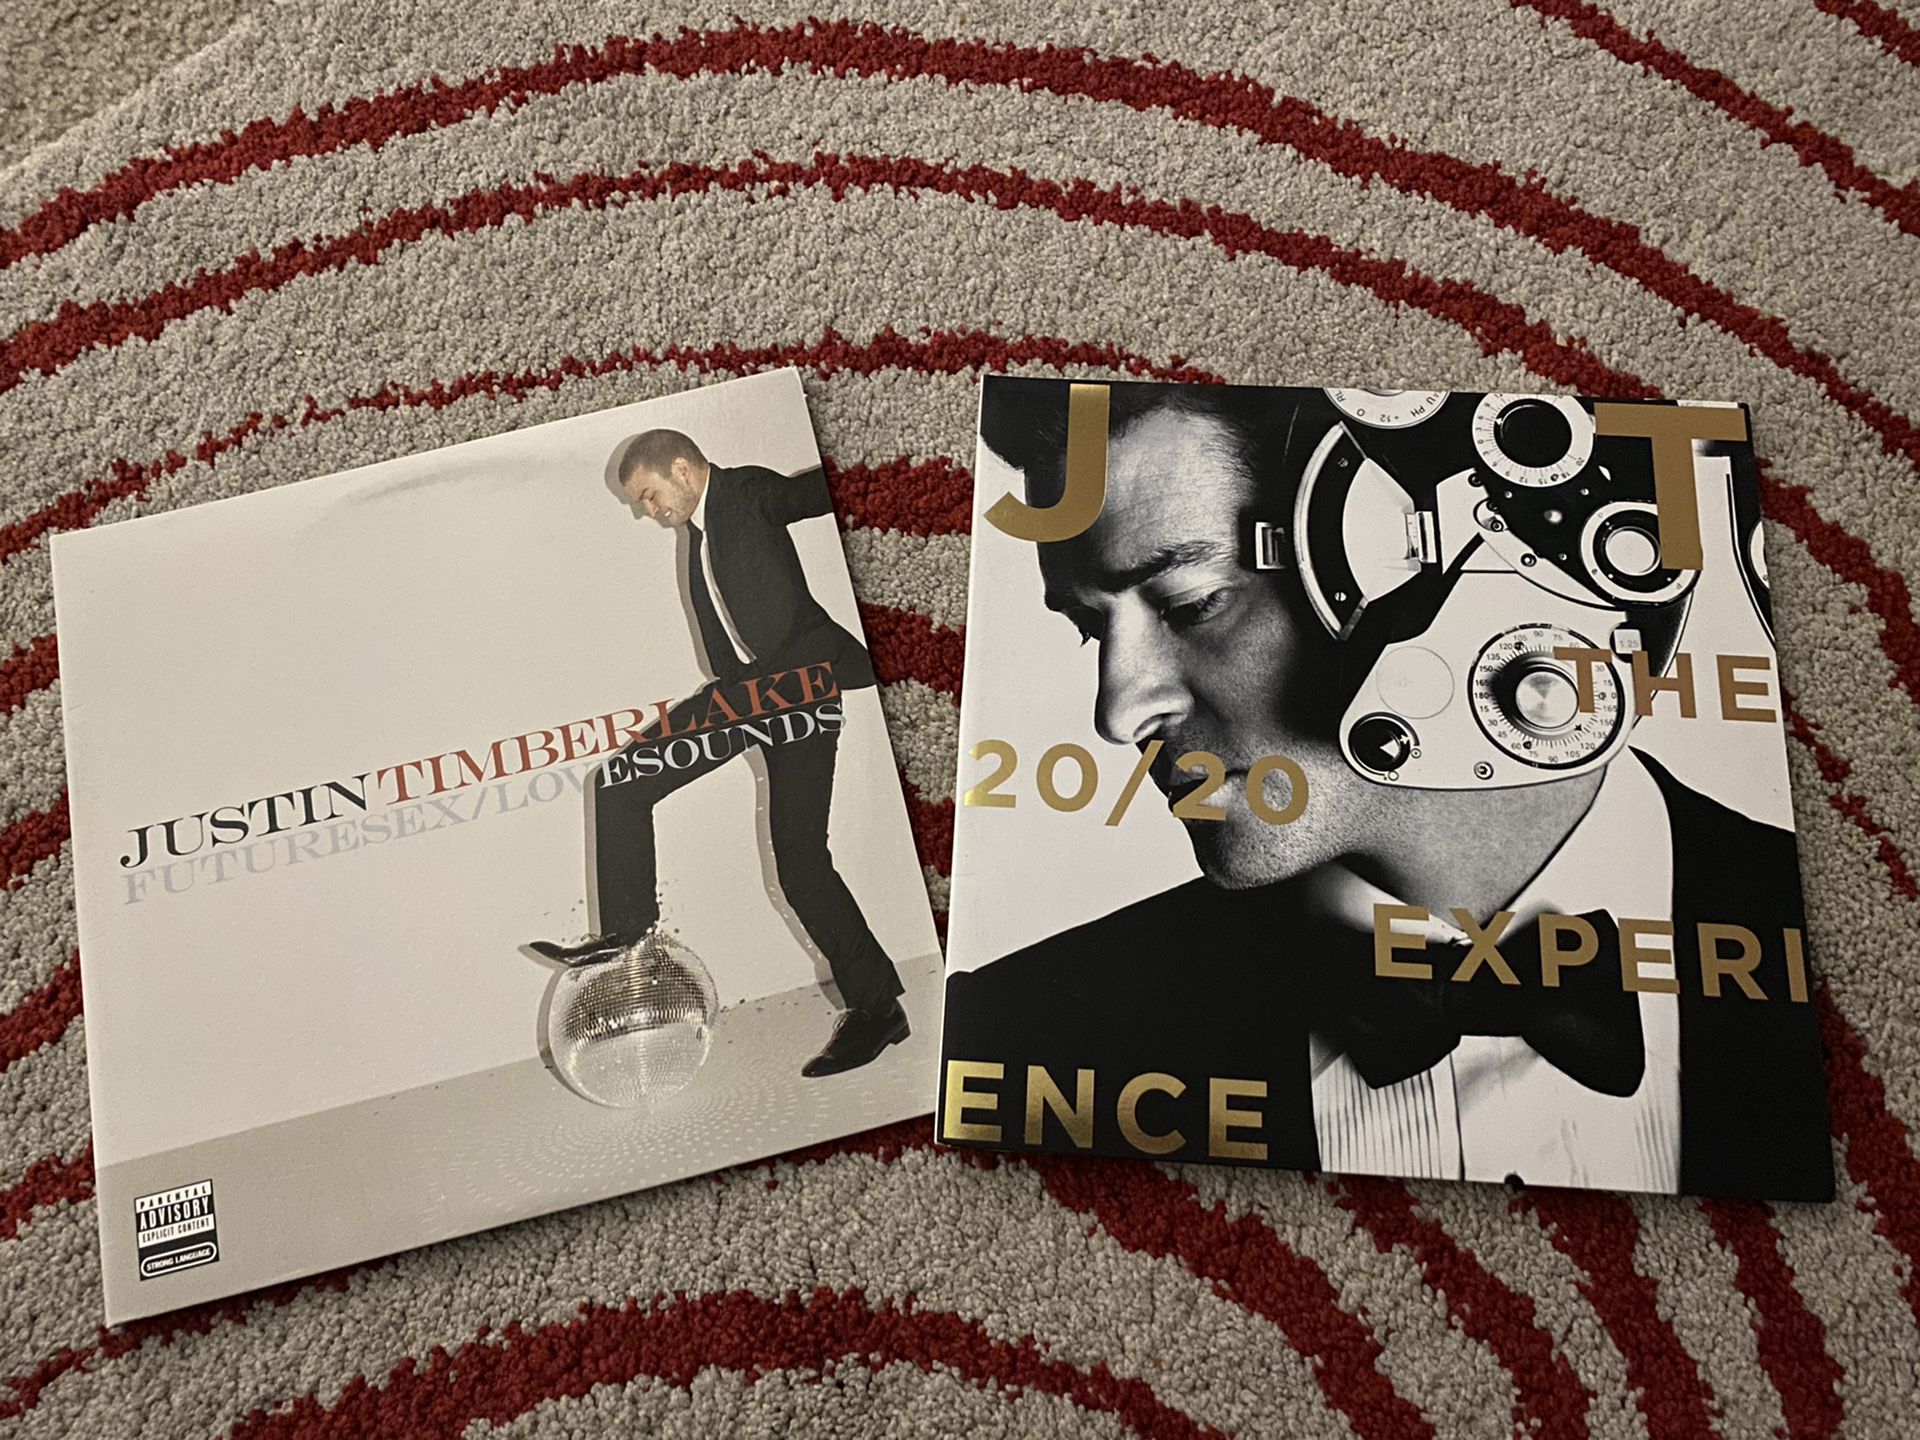 Justin Timberlake vinyl record bundle